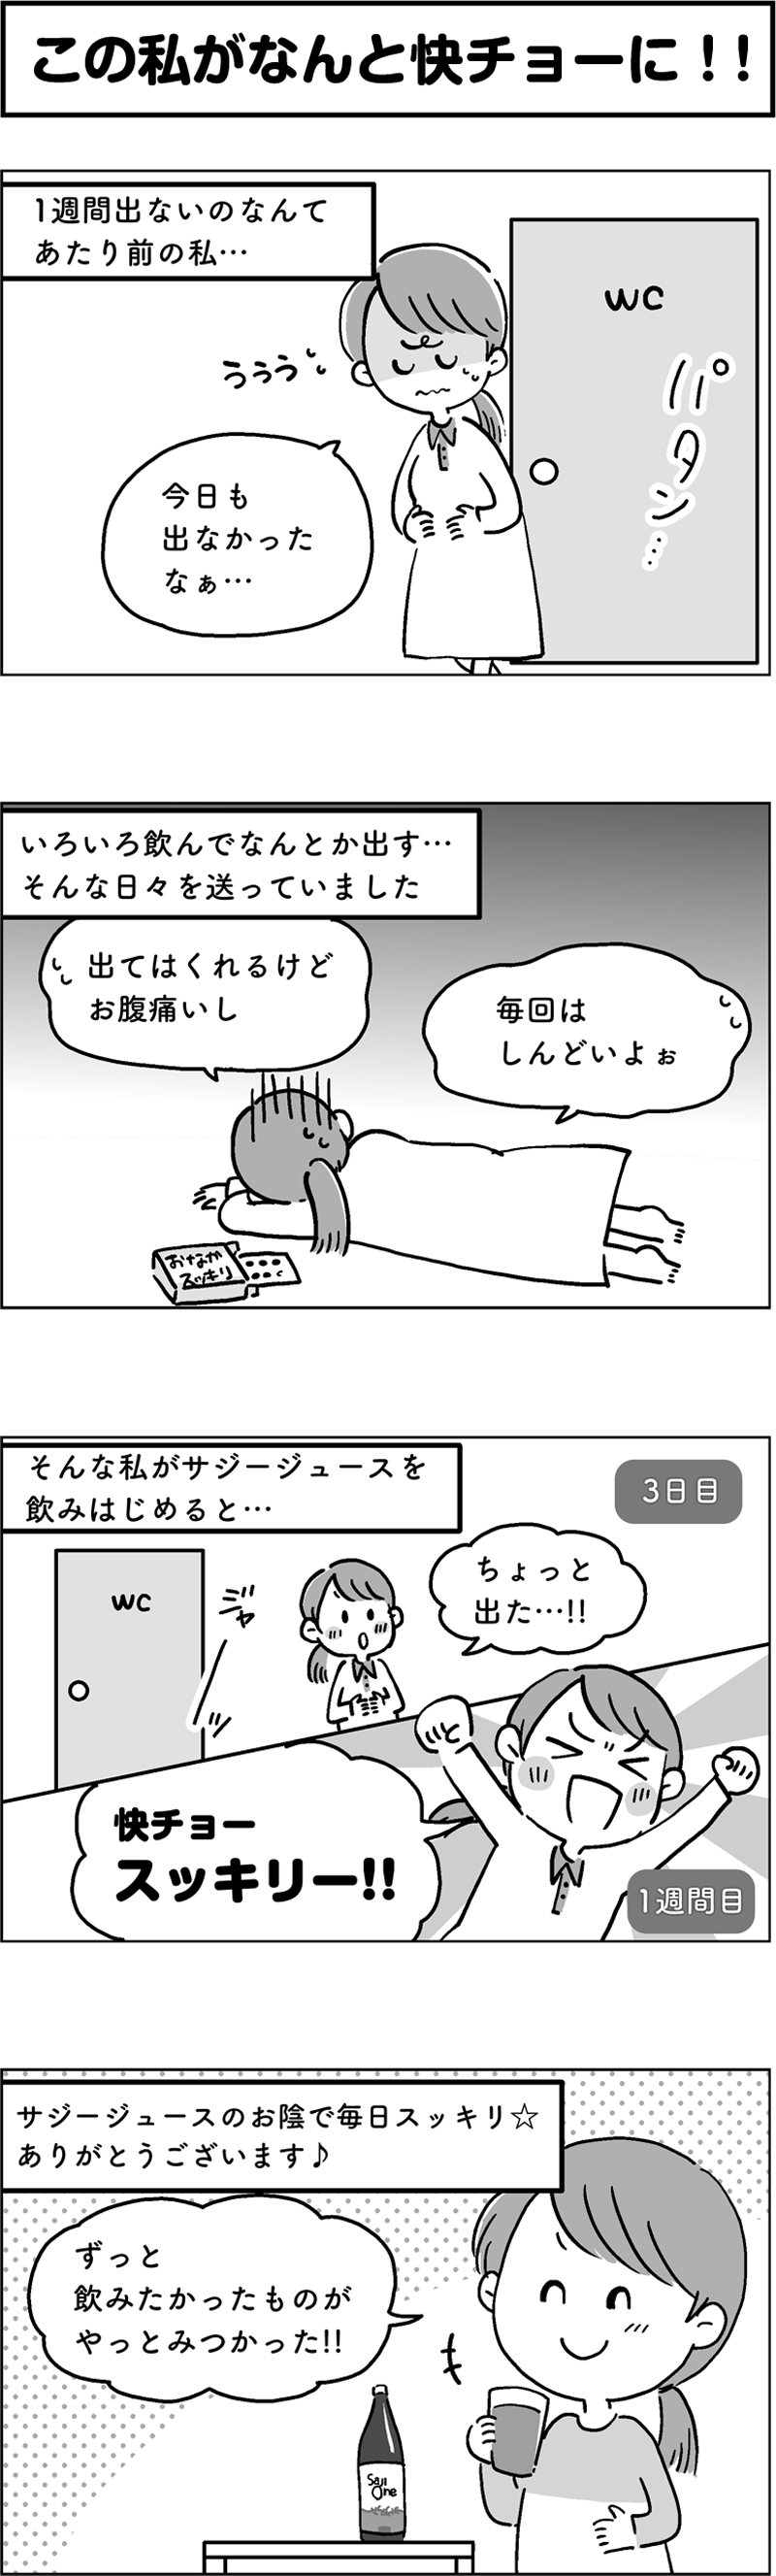 サジージュース「SajiOne」のPR4コマ漫画第1弾[画像1]